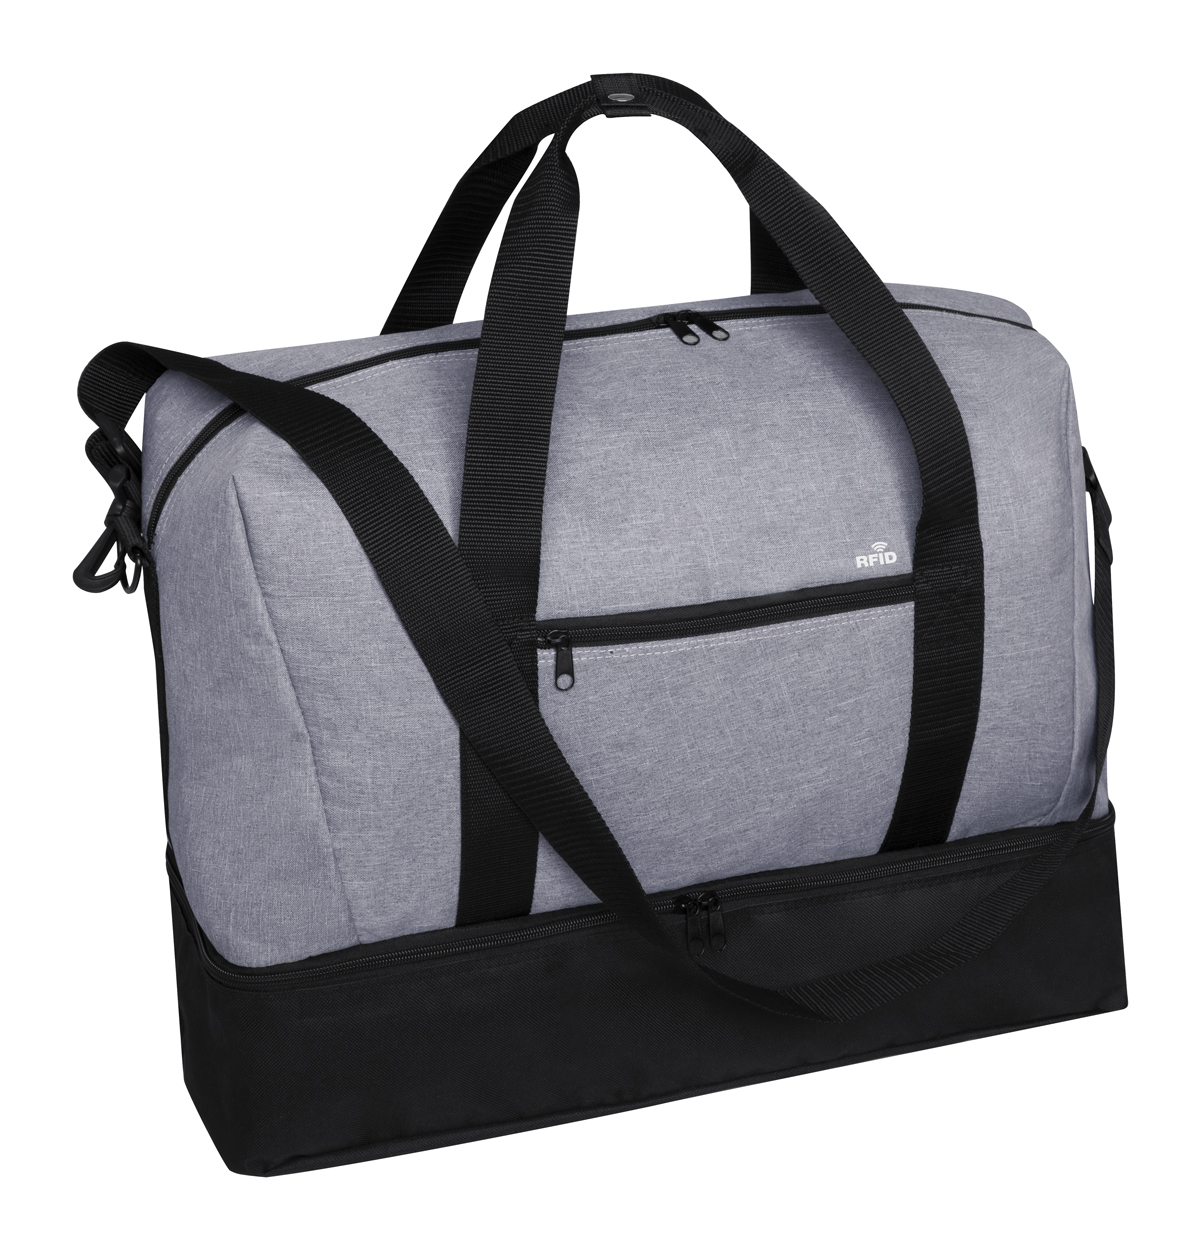 Polyesterová sportovní taška KANIT s kapsou s RFID ochranou - šedý melír / černá